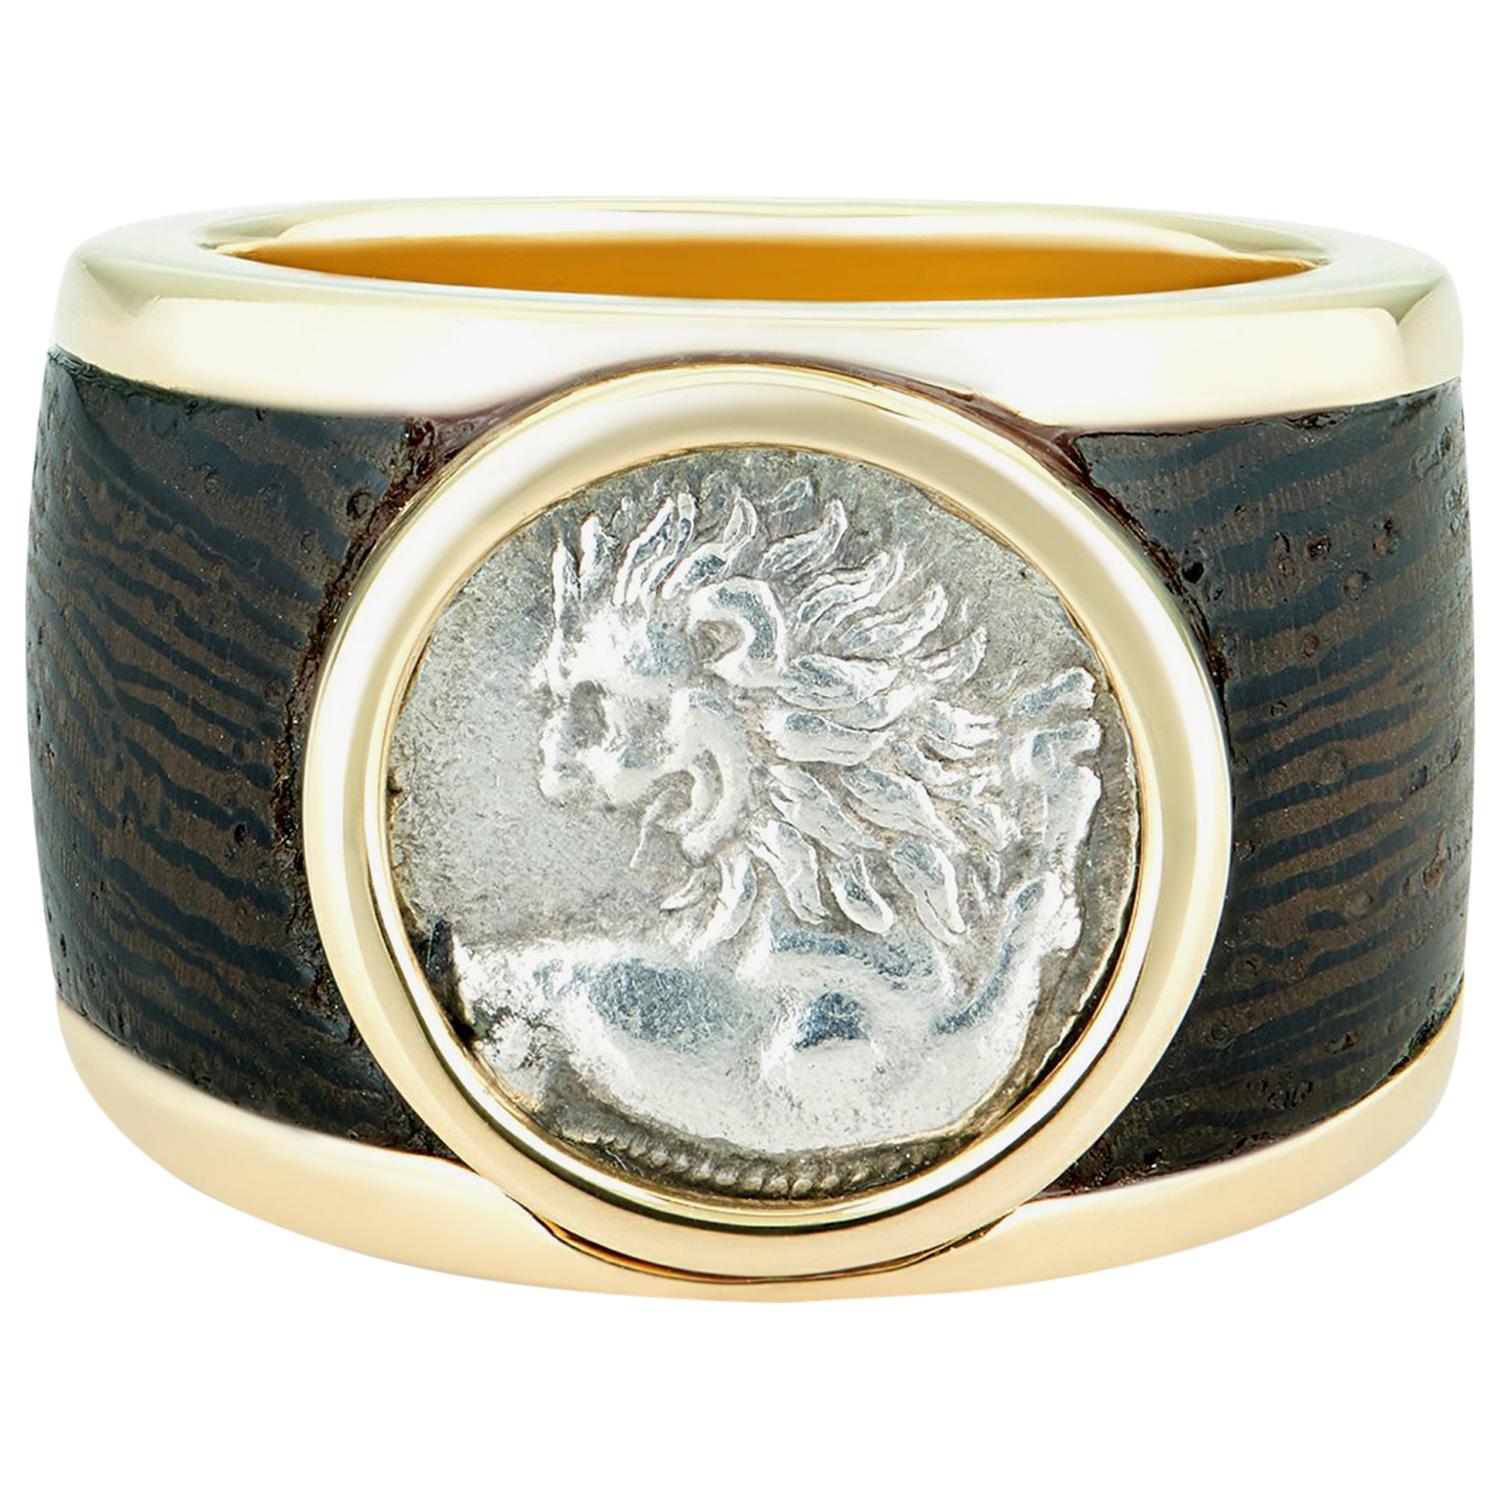 Chevalière Dubini en or 18 carats et bois avec pièce de monnaie ancienne en argent Lion de Chersonèse